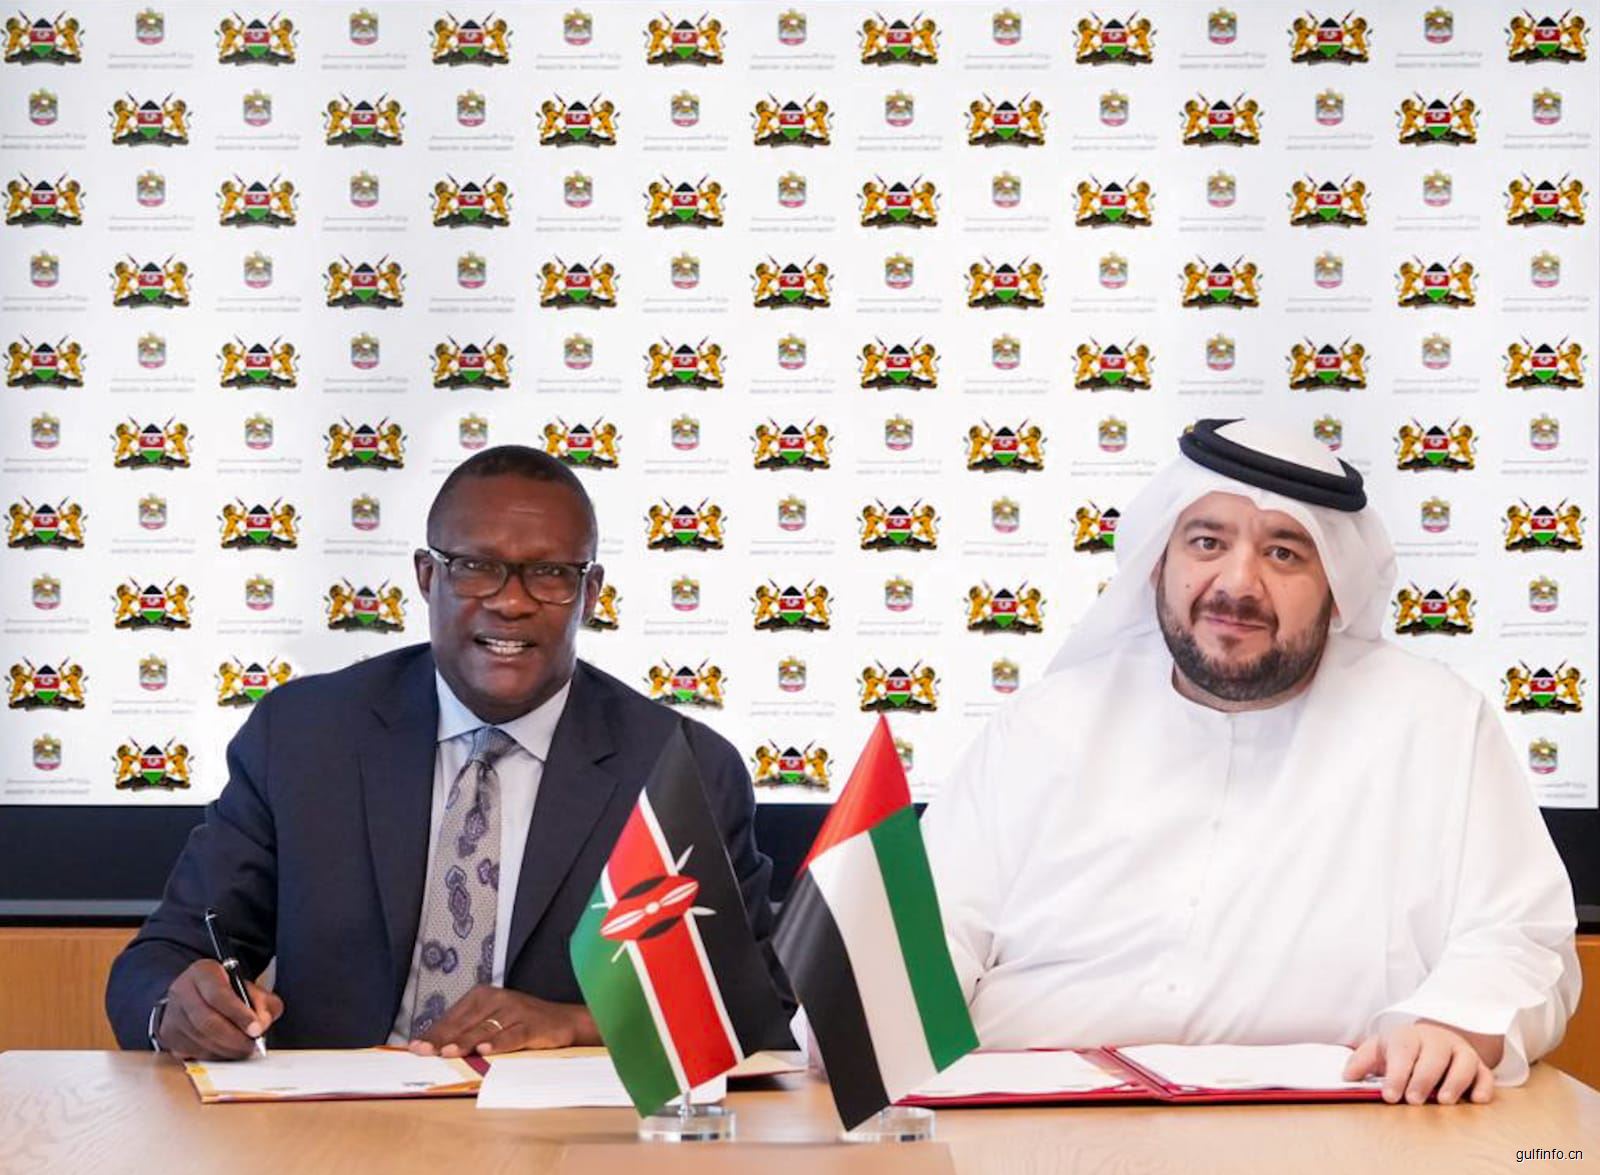 肯尼亚数字化进程加速|肯尼亚和阿拉伯启动数字走廊倡议